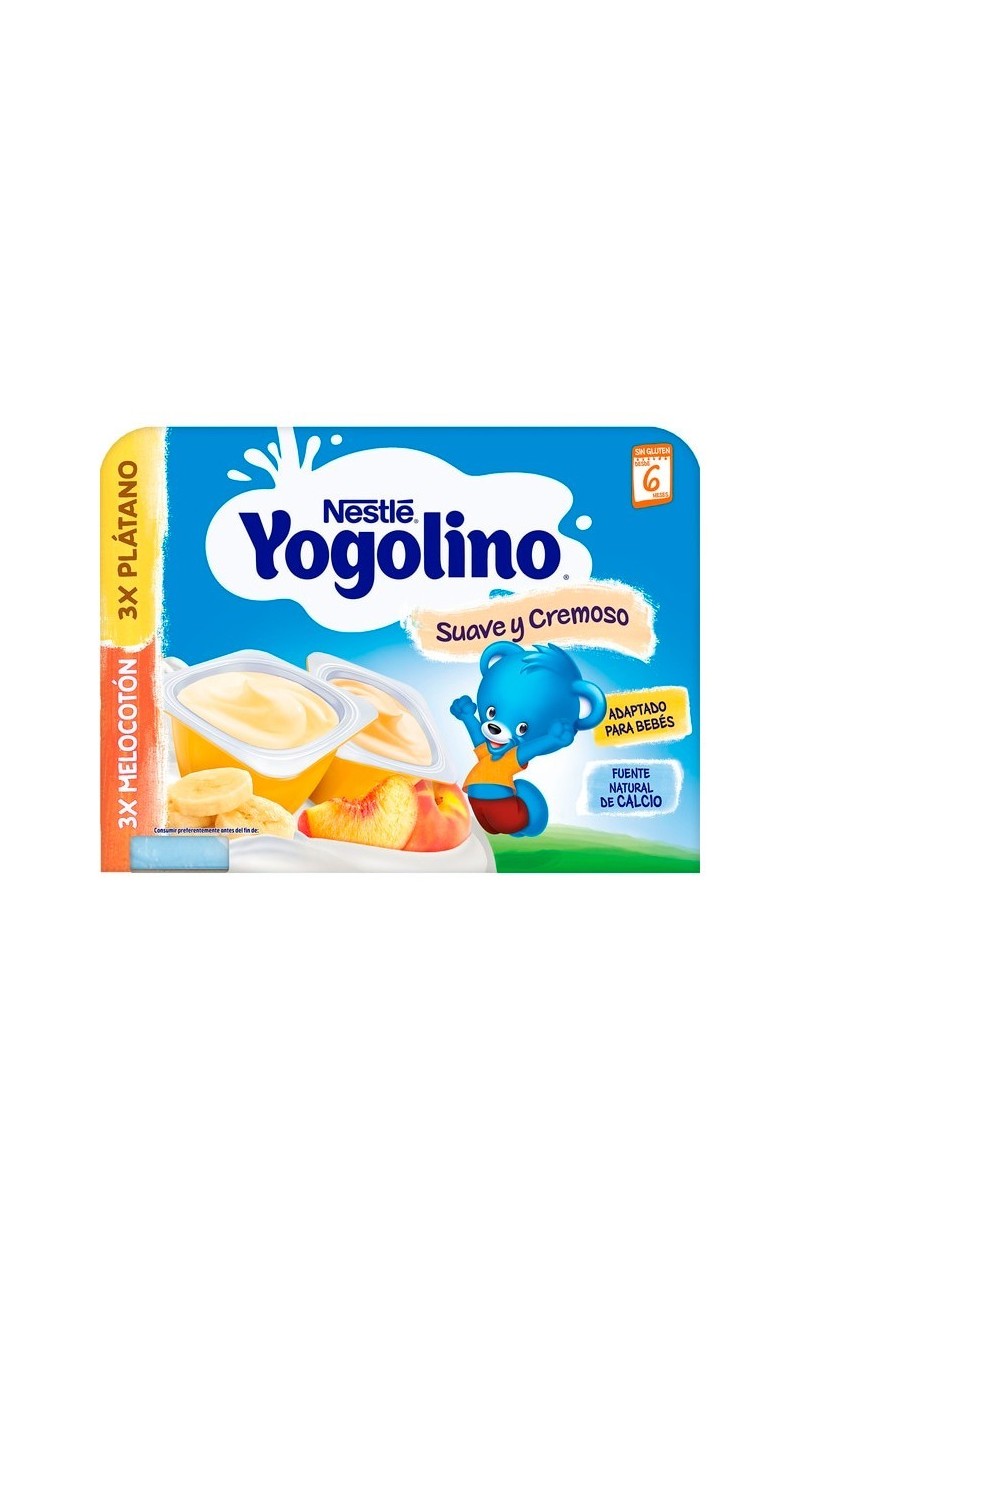 NESTLE - Nestlé Yogolino Banana and Peach 6x60g